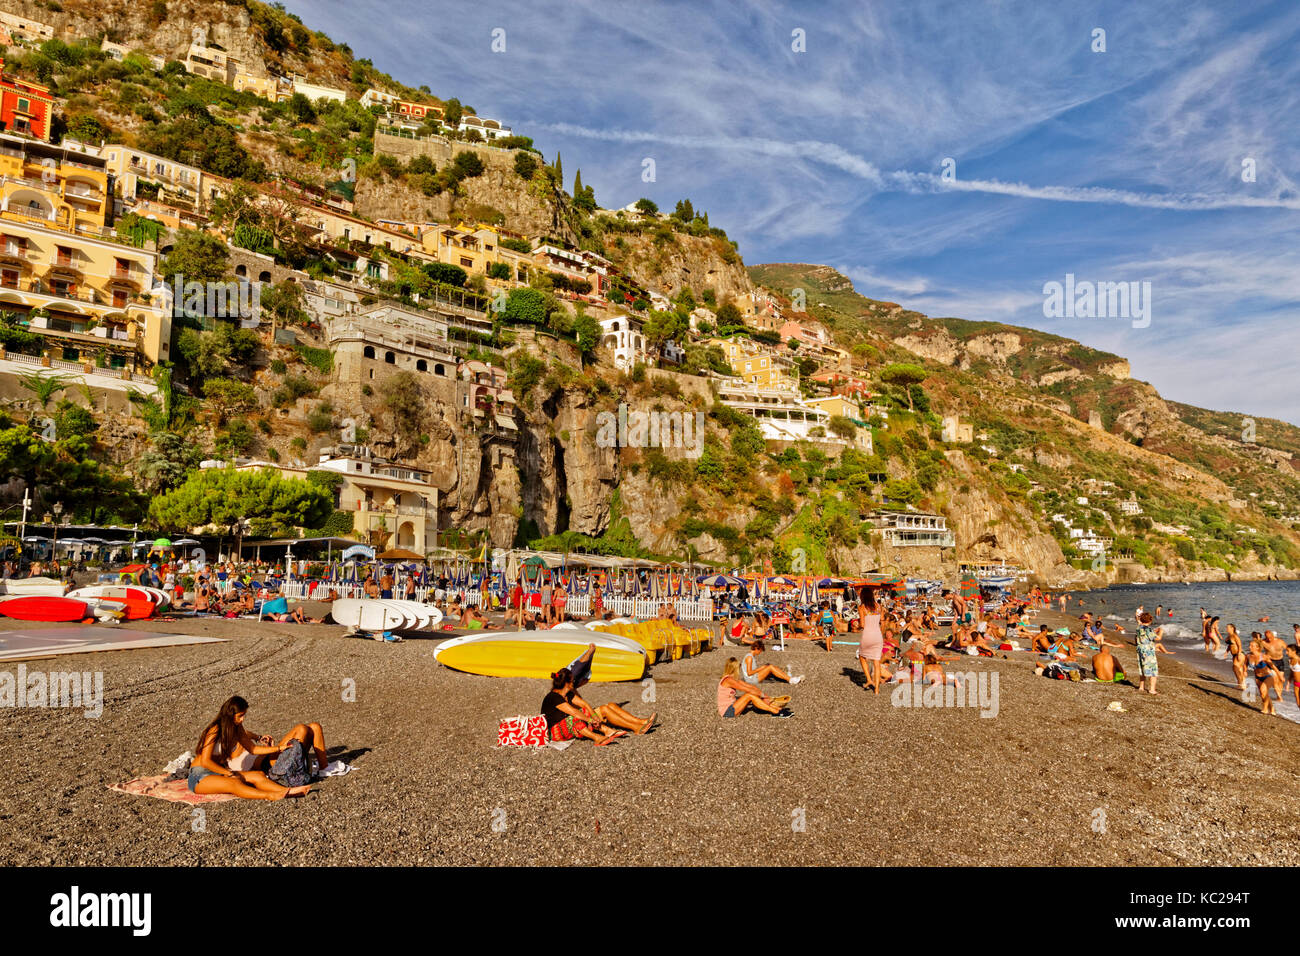 Plage de Positano sur la côte amalfitaine, au sud de l'Italie. Banque D'Images